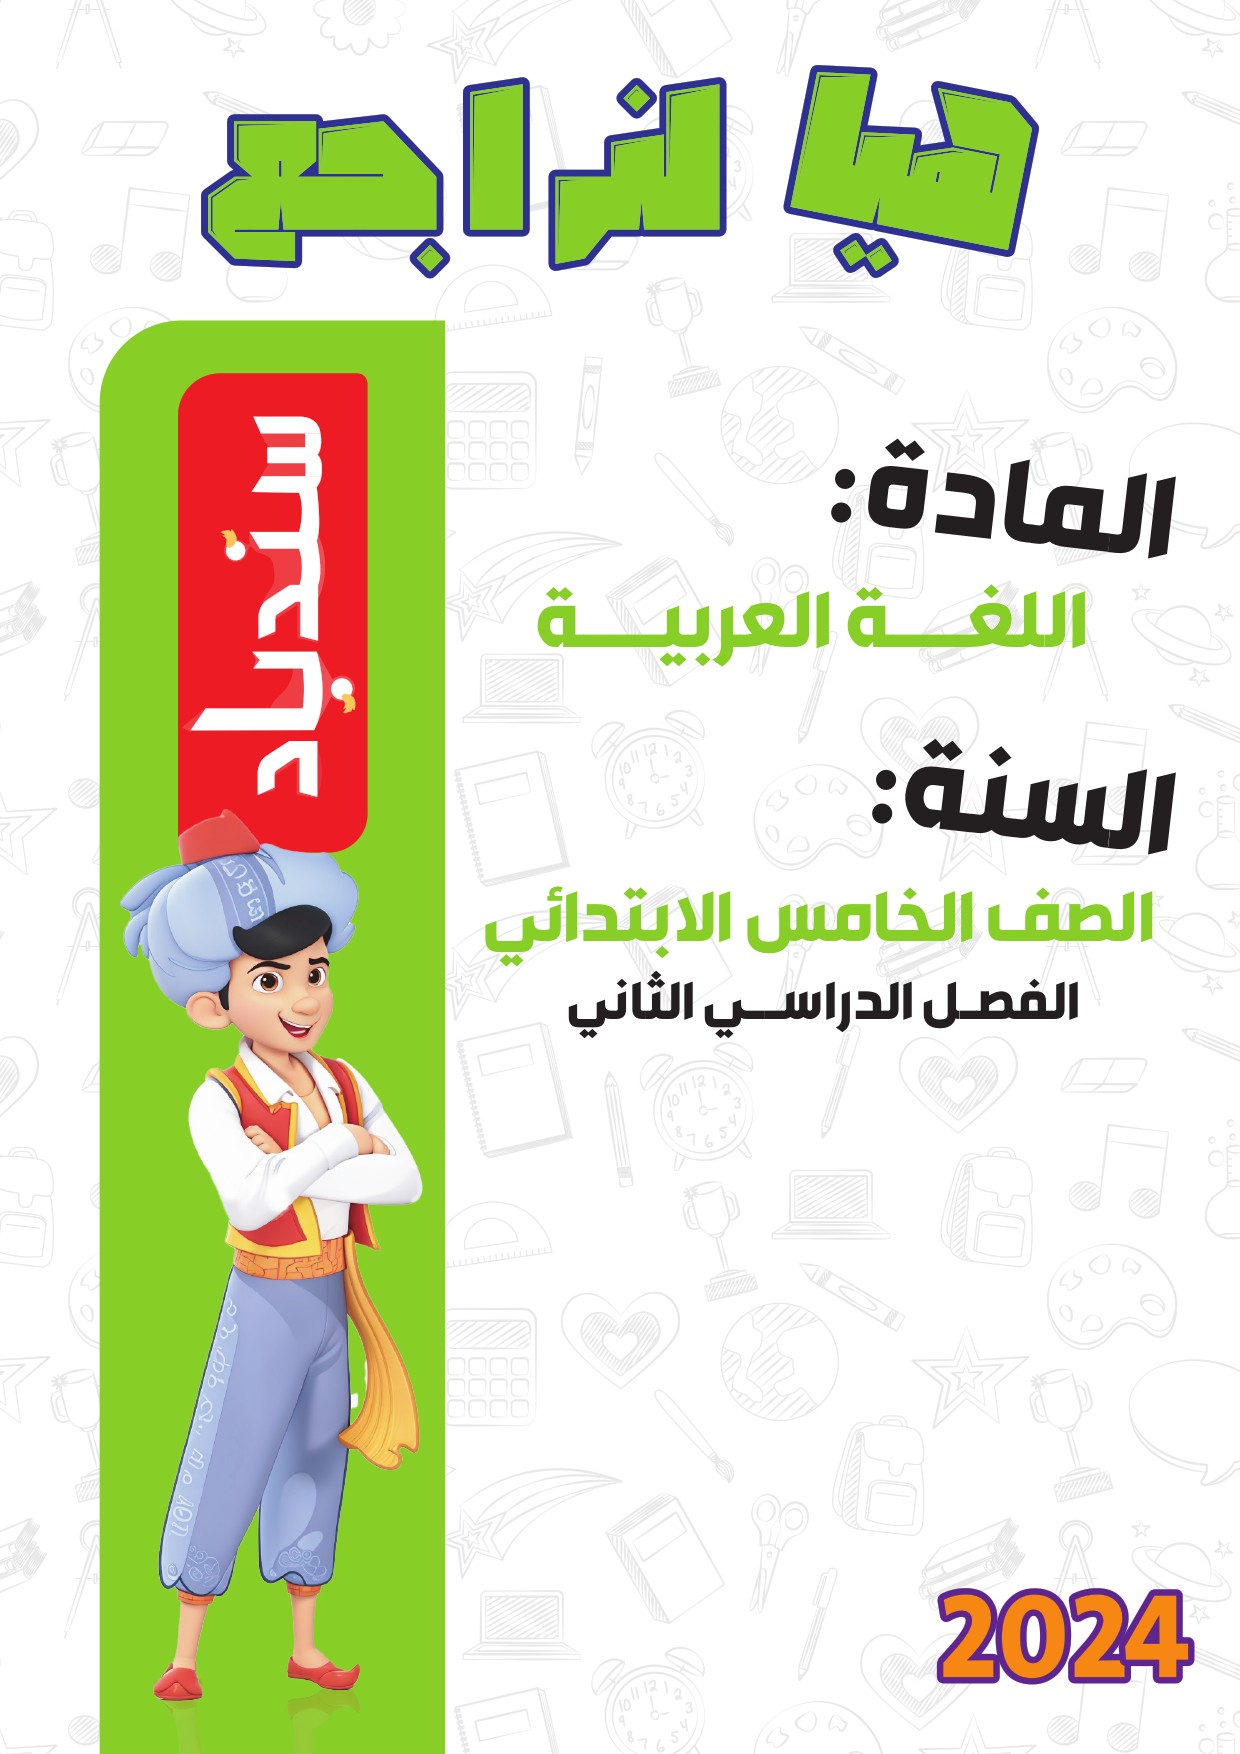 مراجعة لغة عربية من كتاب سندباد للصف الخامس الابتدائي الترم الثاني 2024 PDF بالاجابات	 مدرس دوت كوم